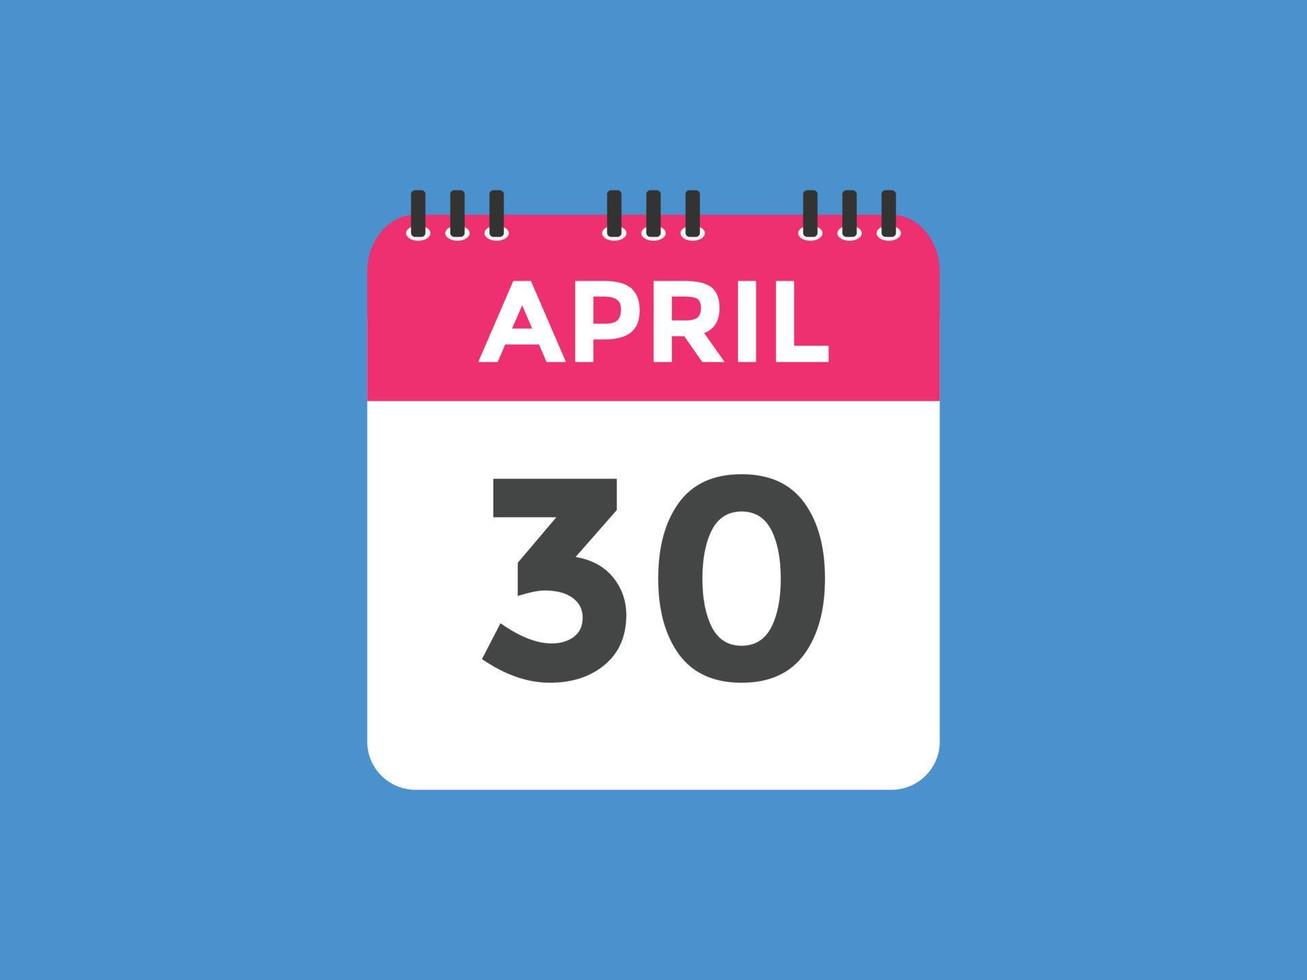 april 30 kalender herinnering. 30e april dagelijks kalender icoon sjabloon. kalender 30e april icoon ontwerp sjabloon. vector illustratie